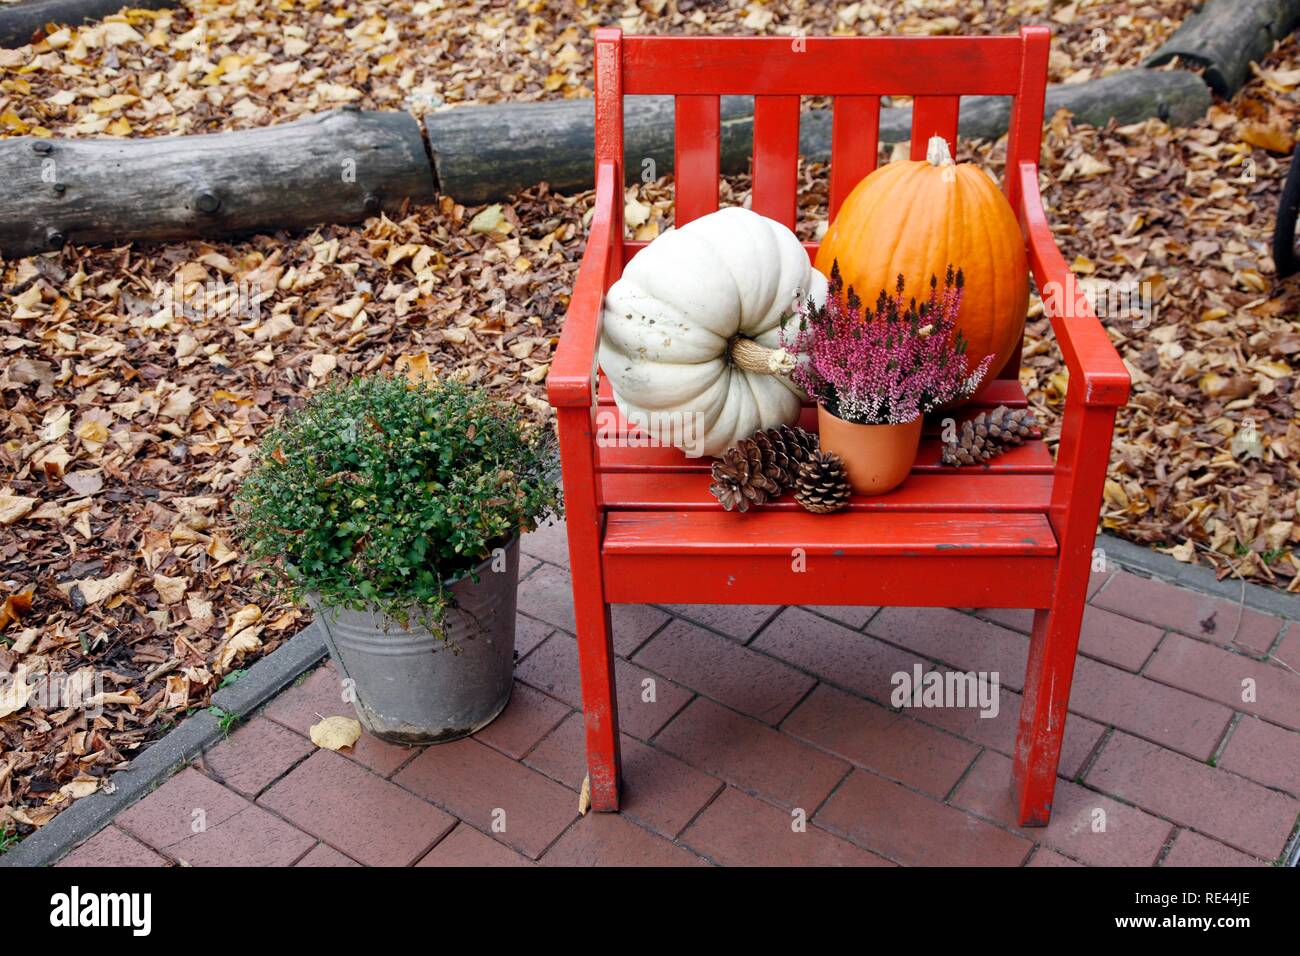 Herbst Dekoration mit Kürbissen, Tannenzapfen und Pflanzen auf einem roten  Stuhl in einem Garten Stockfotografie - Alamy